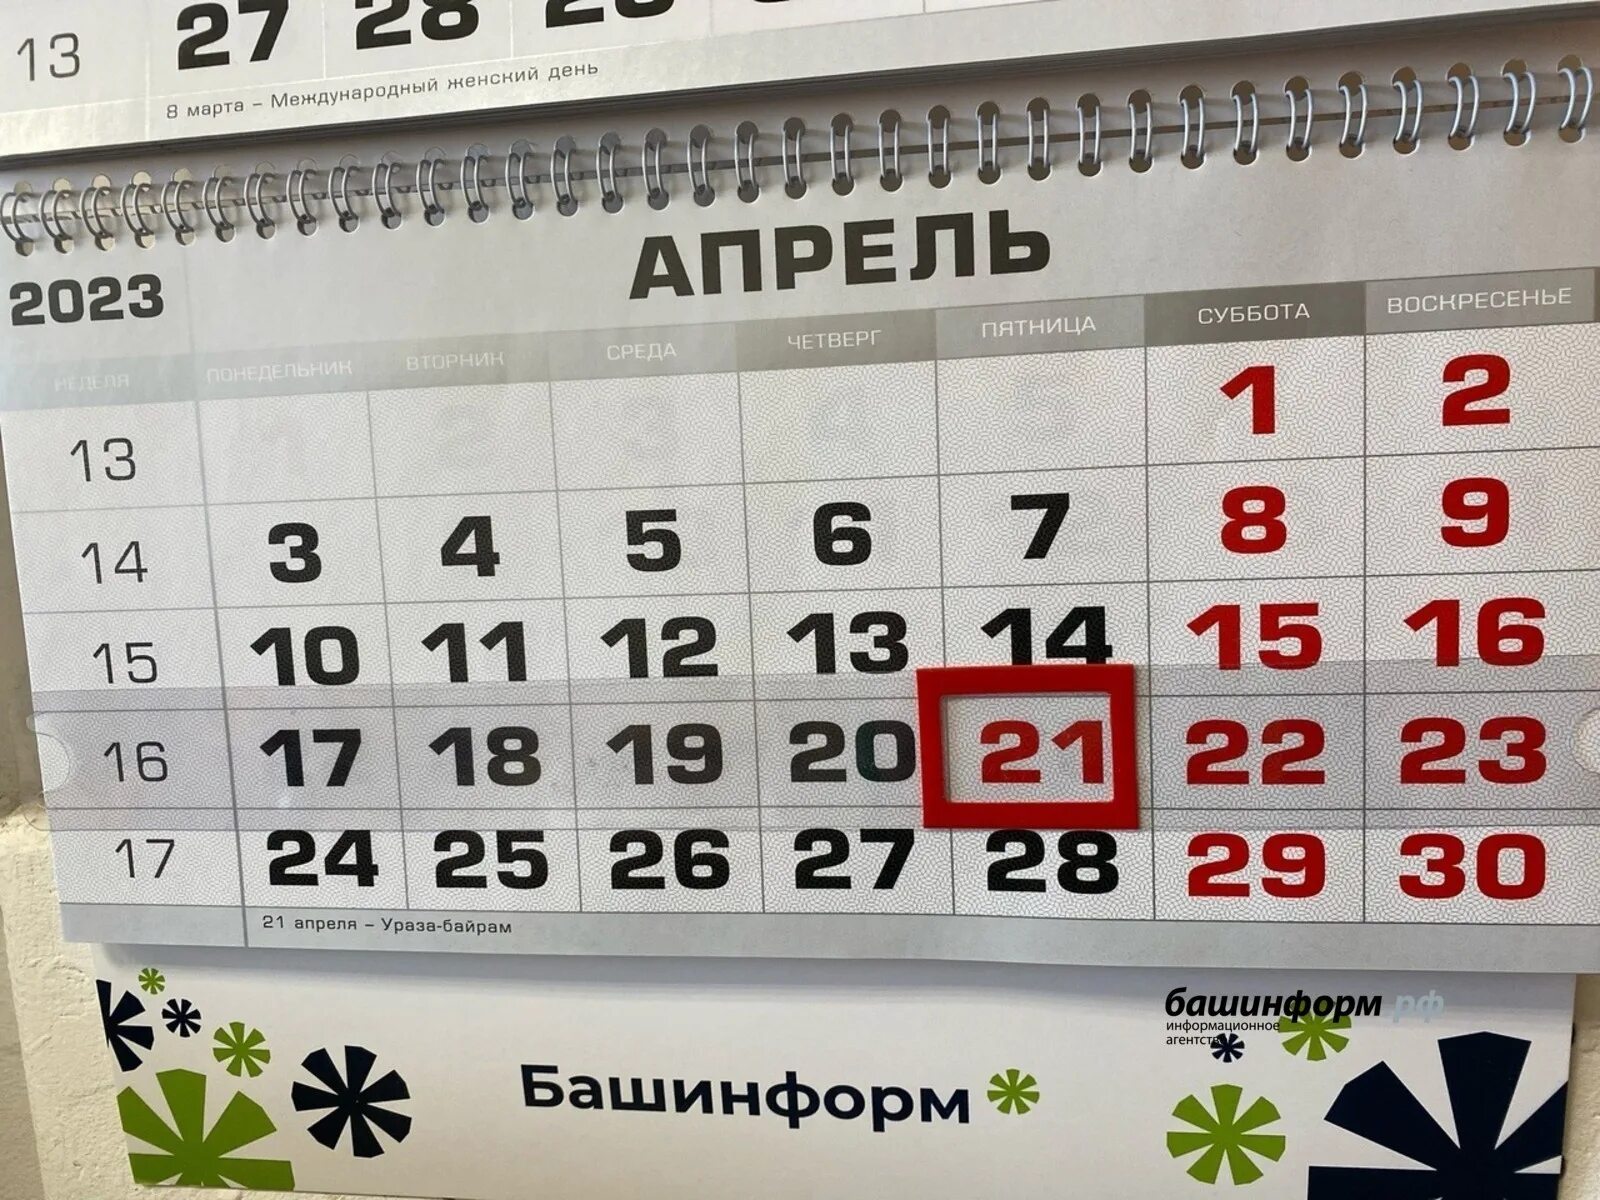 10 апреля ураза выходной. Праздники в апреле 2023 выходные. Выходные дни в апреле. Календарь апрельских праздников. Праздничные дни в апреле 2024 в Башкирии.